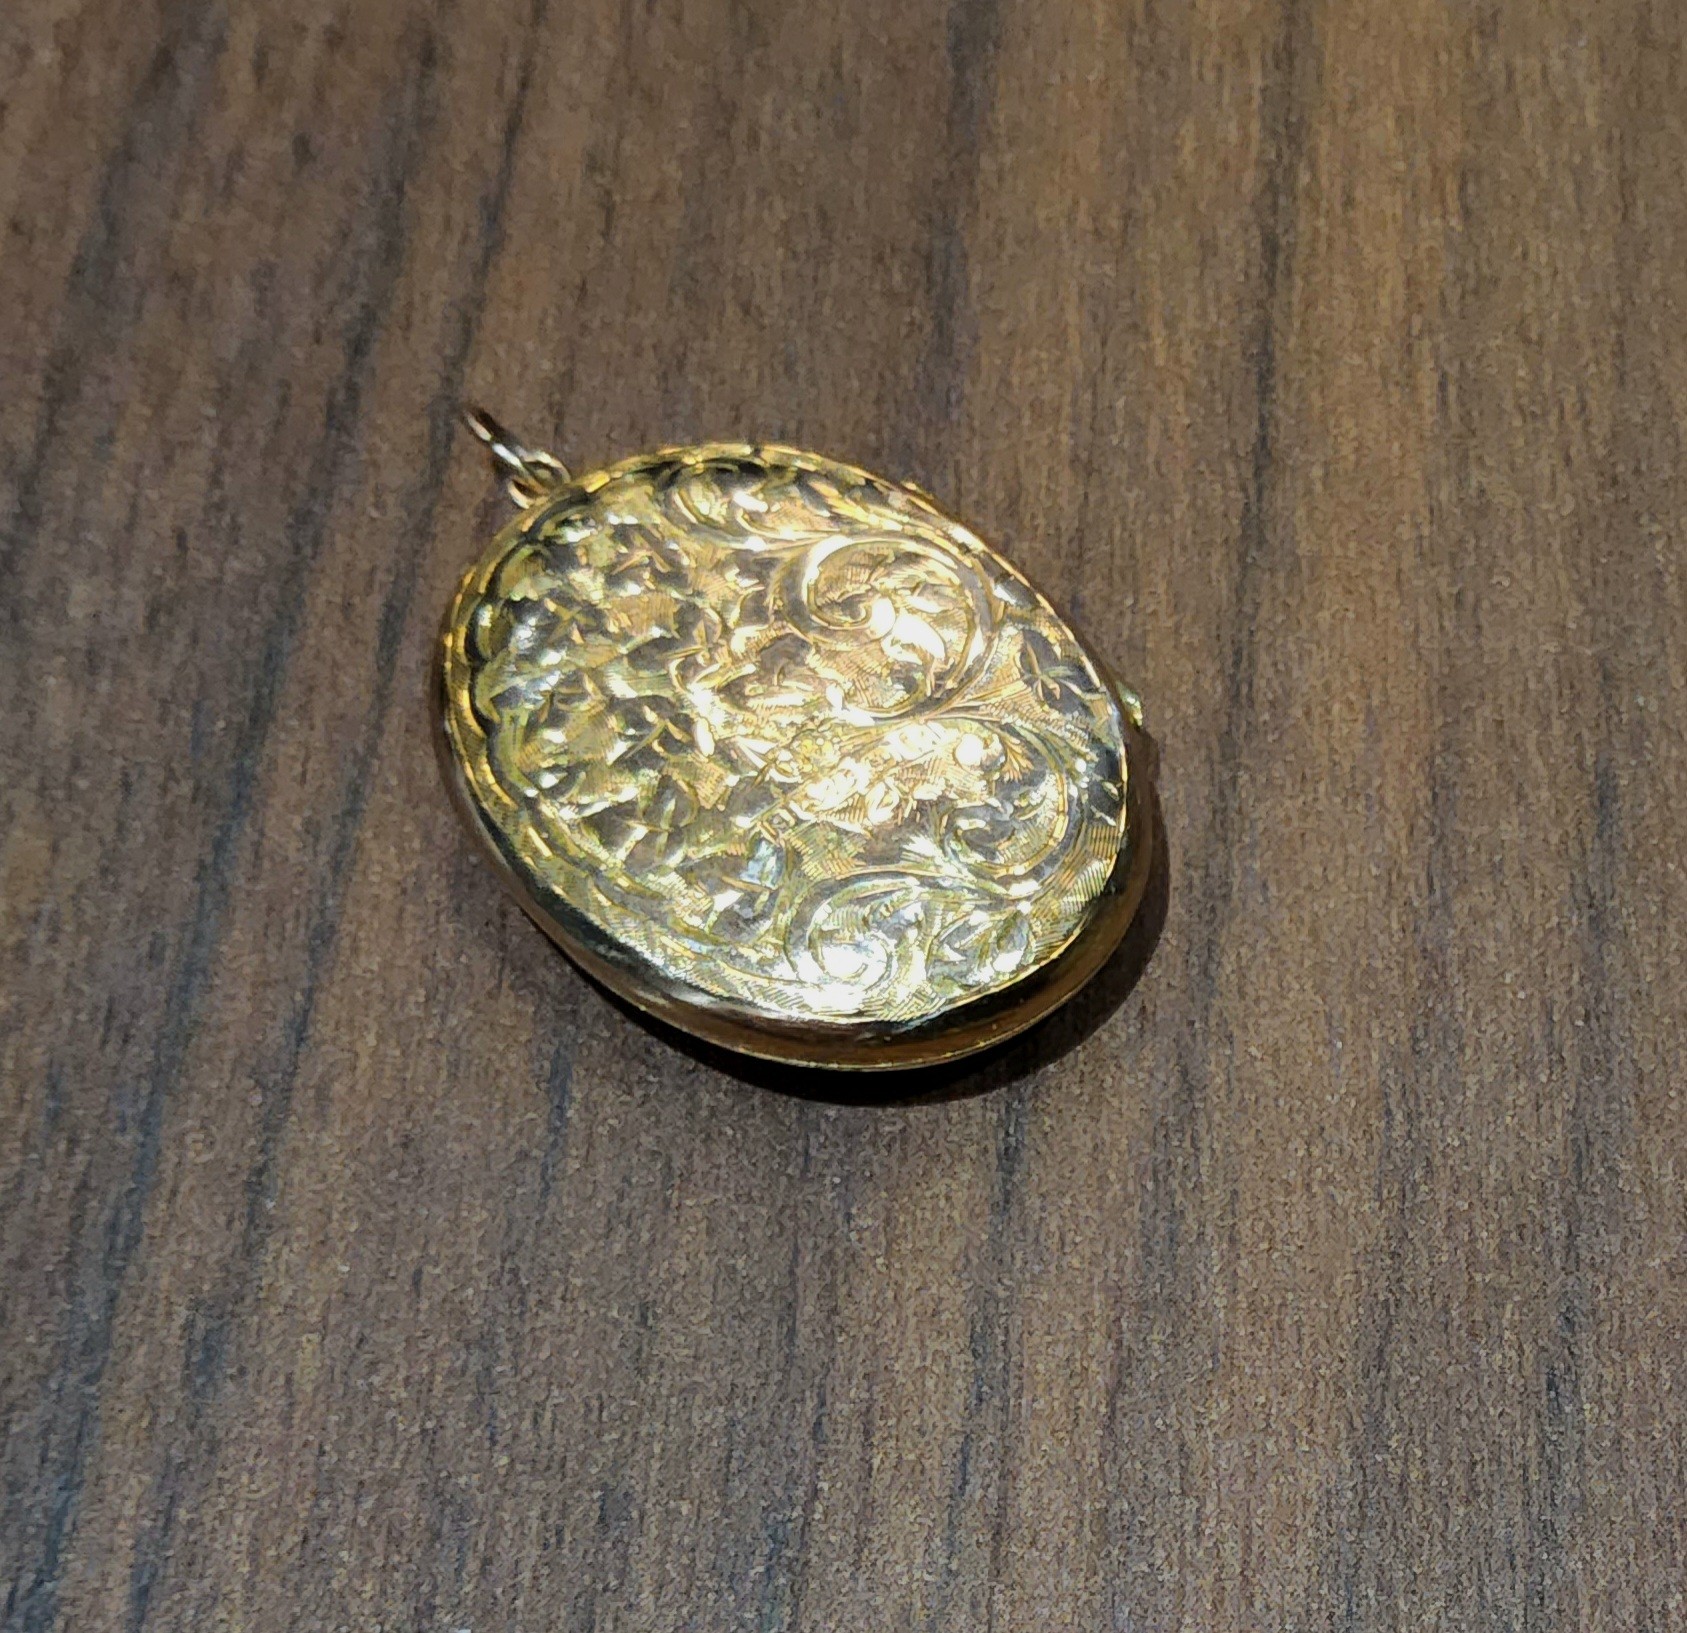 A gold locket, Birmingham, 1918 3.94g